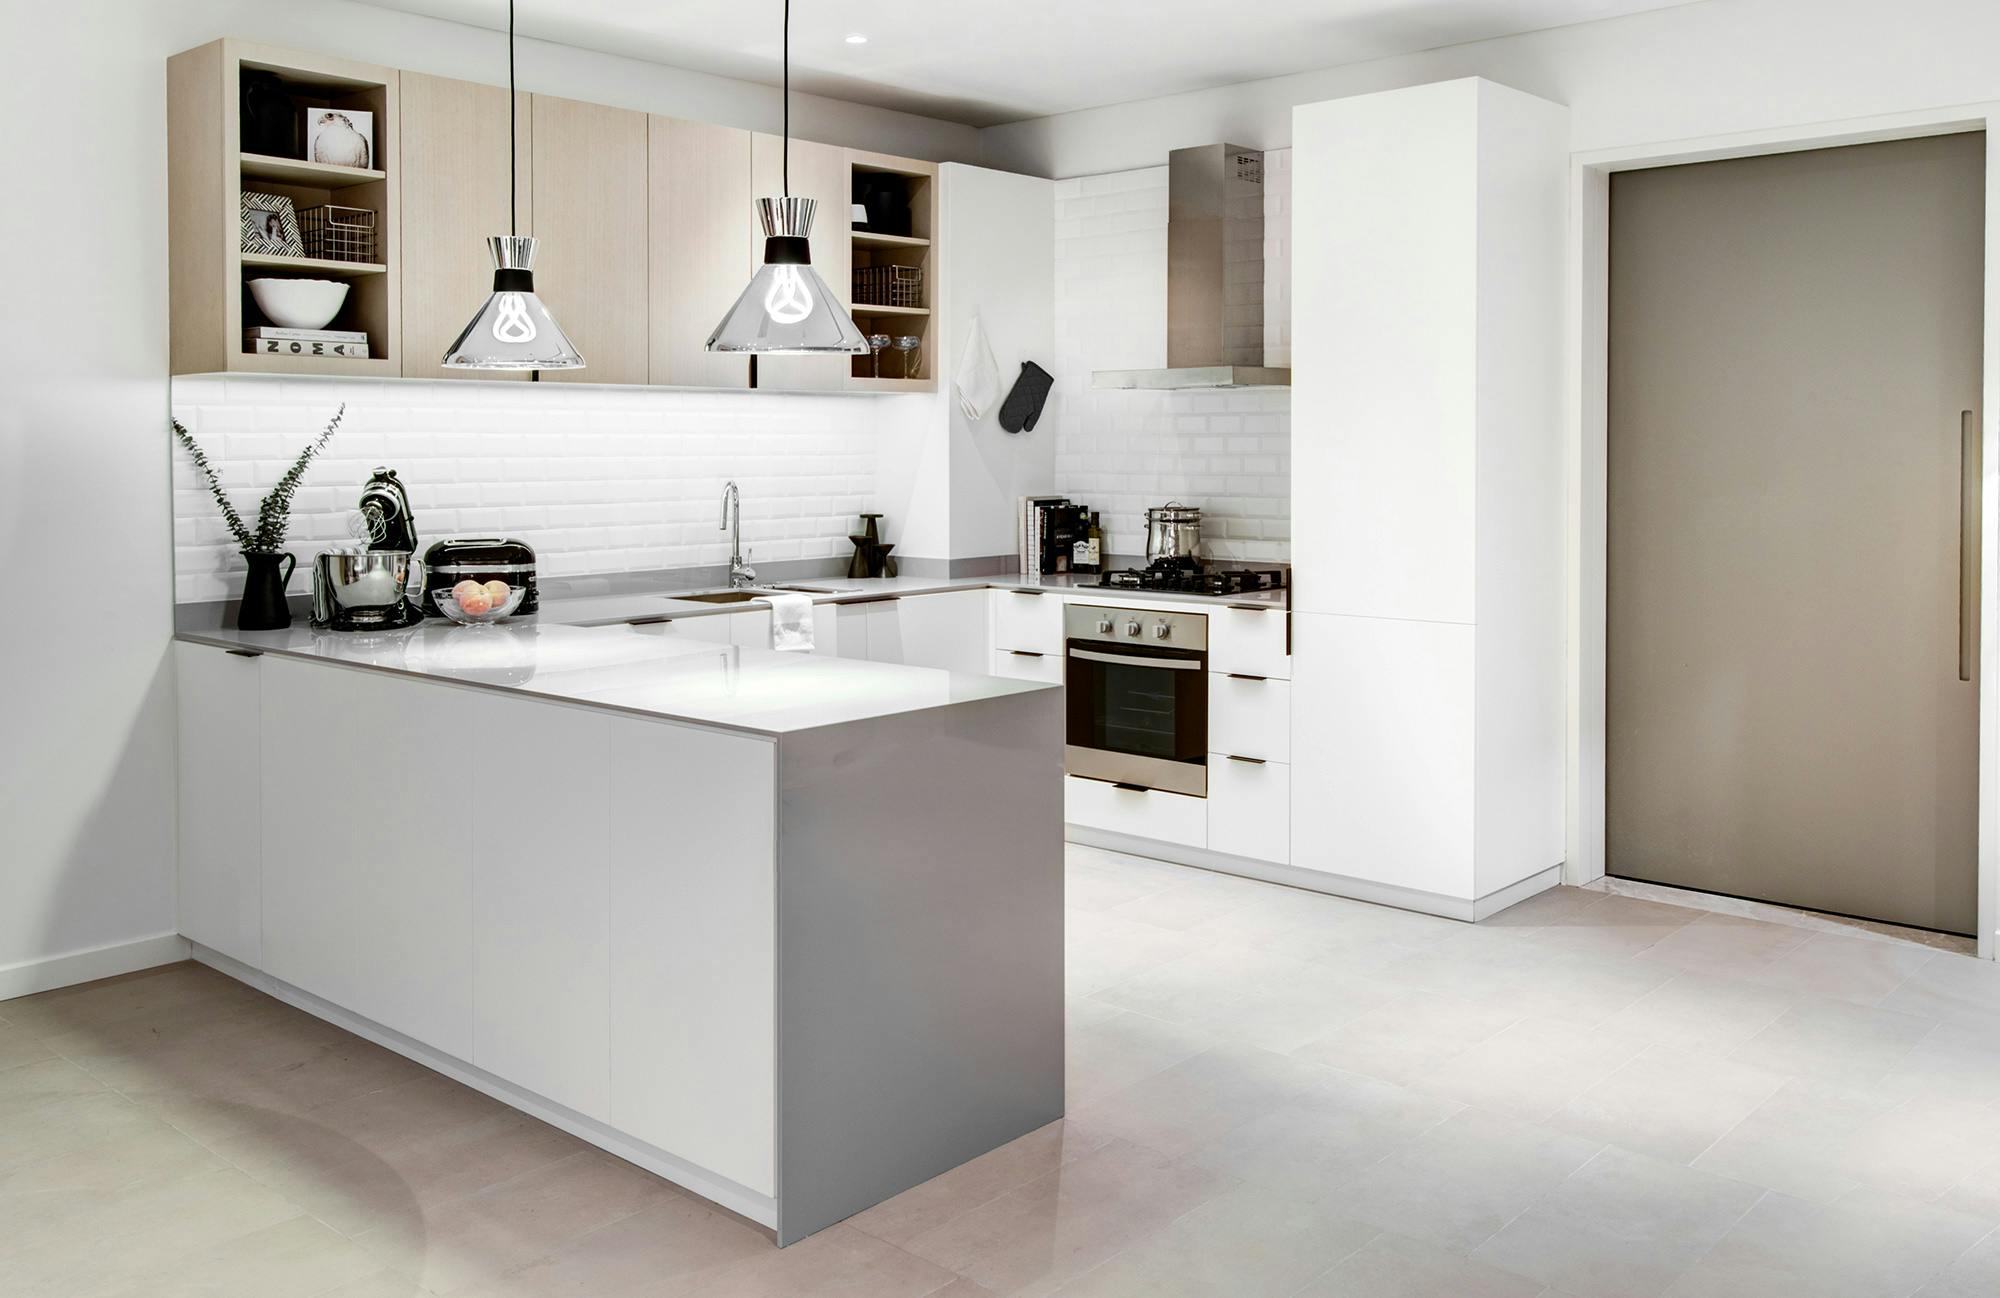 Bildnummer 36 des aktuellen Abschnitts von An open concept kitchen by MS2 Design Studio in a luxury South Beach condo von Cosentino Österreich